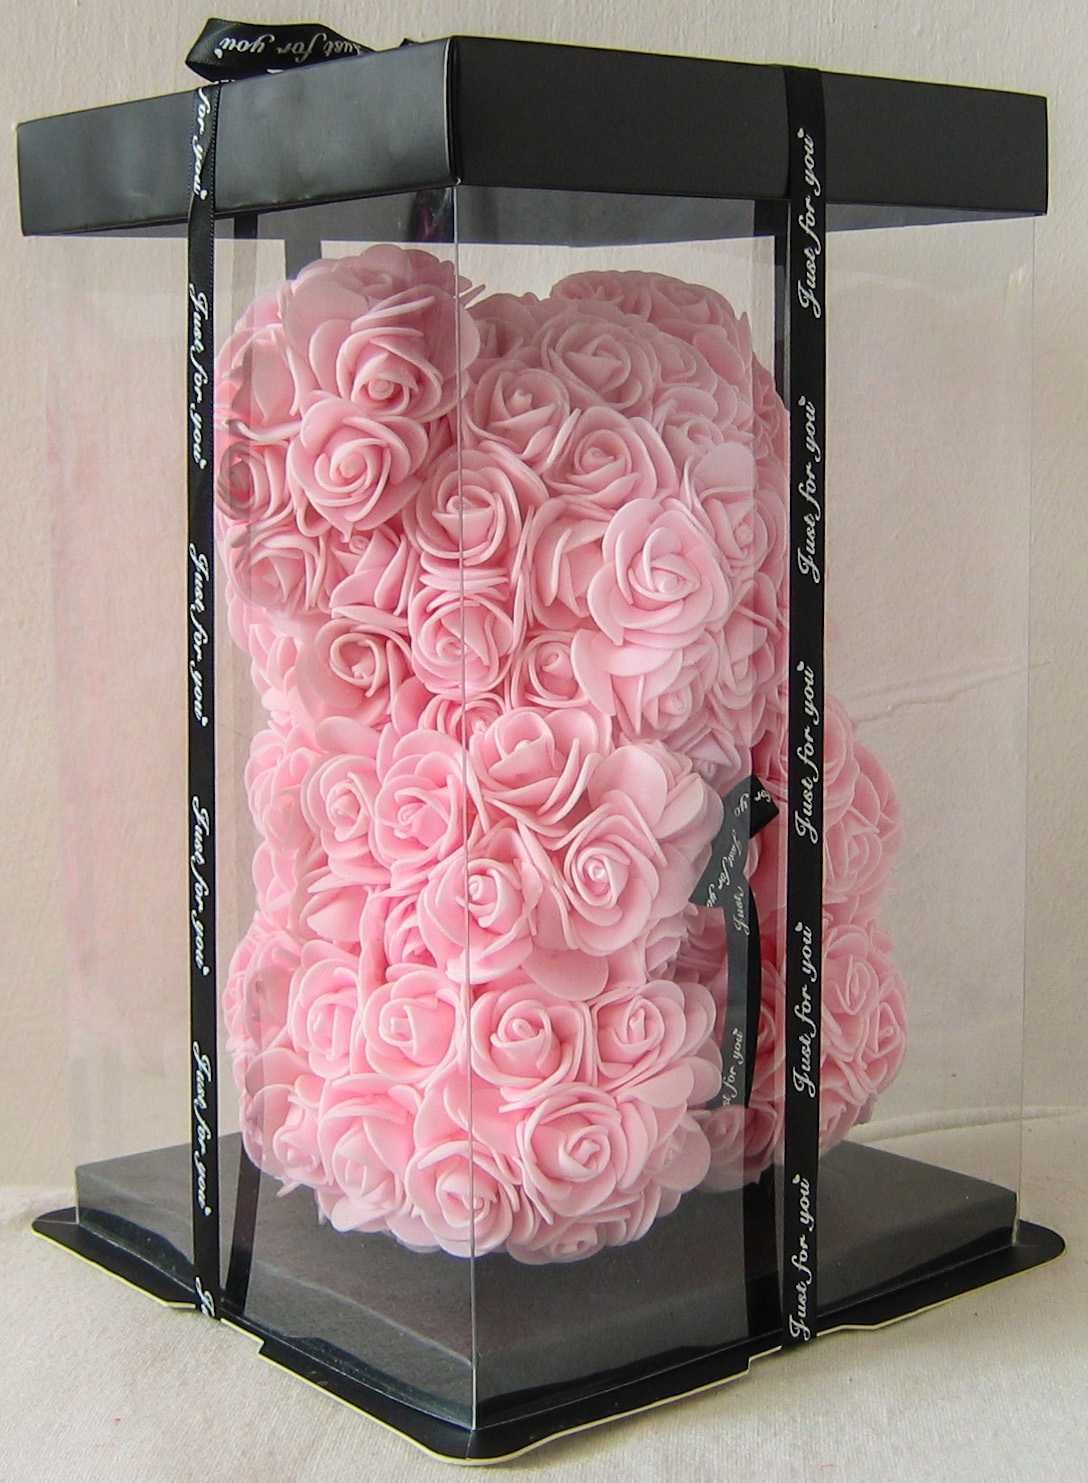 Piękny Miś 25 cm z Róż Śliczny Prezent Urodziny Imieniny Romantyczny